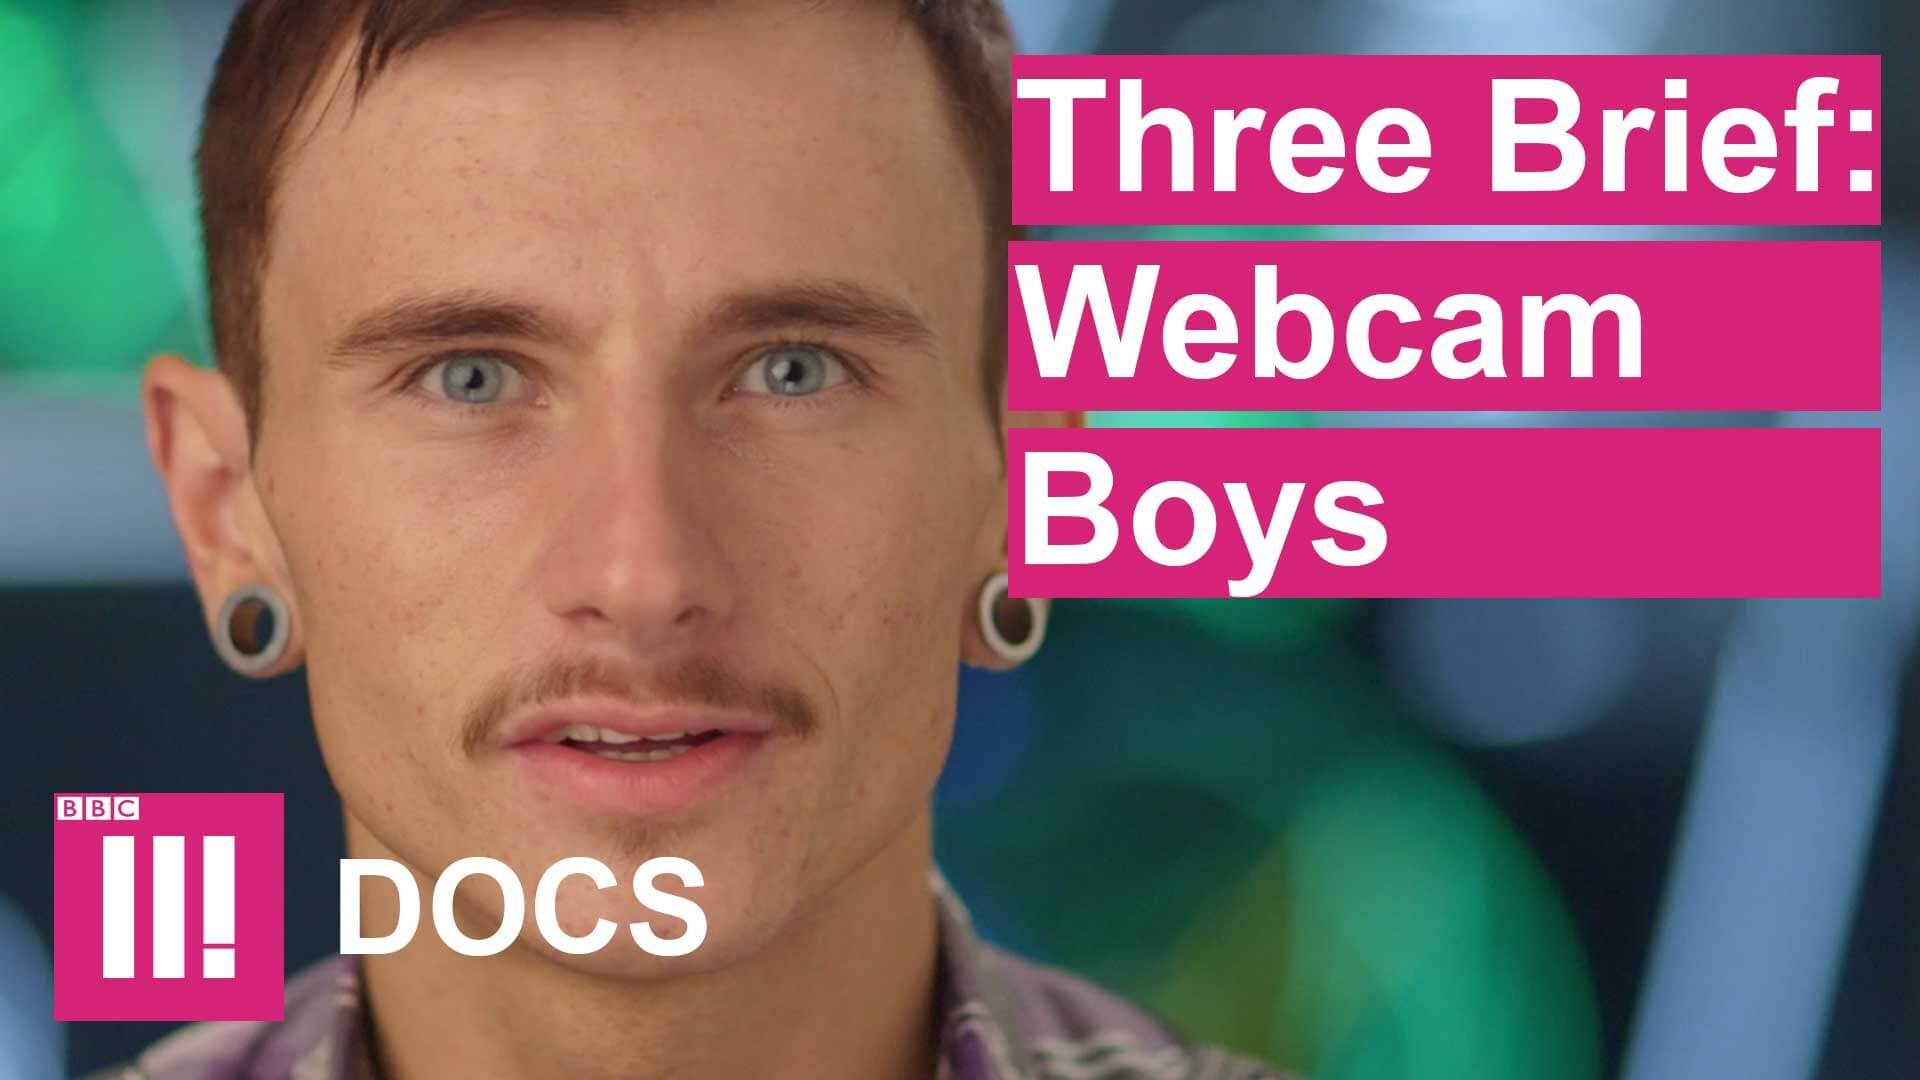 webcam_boys_BBC_3